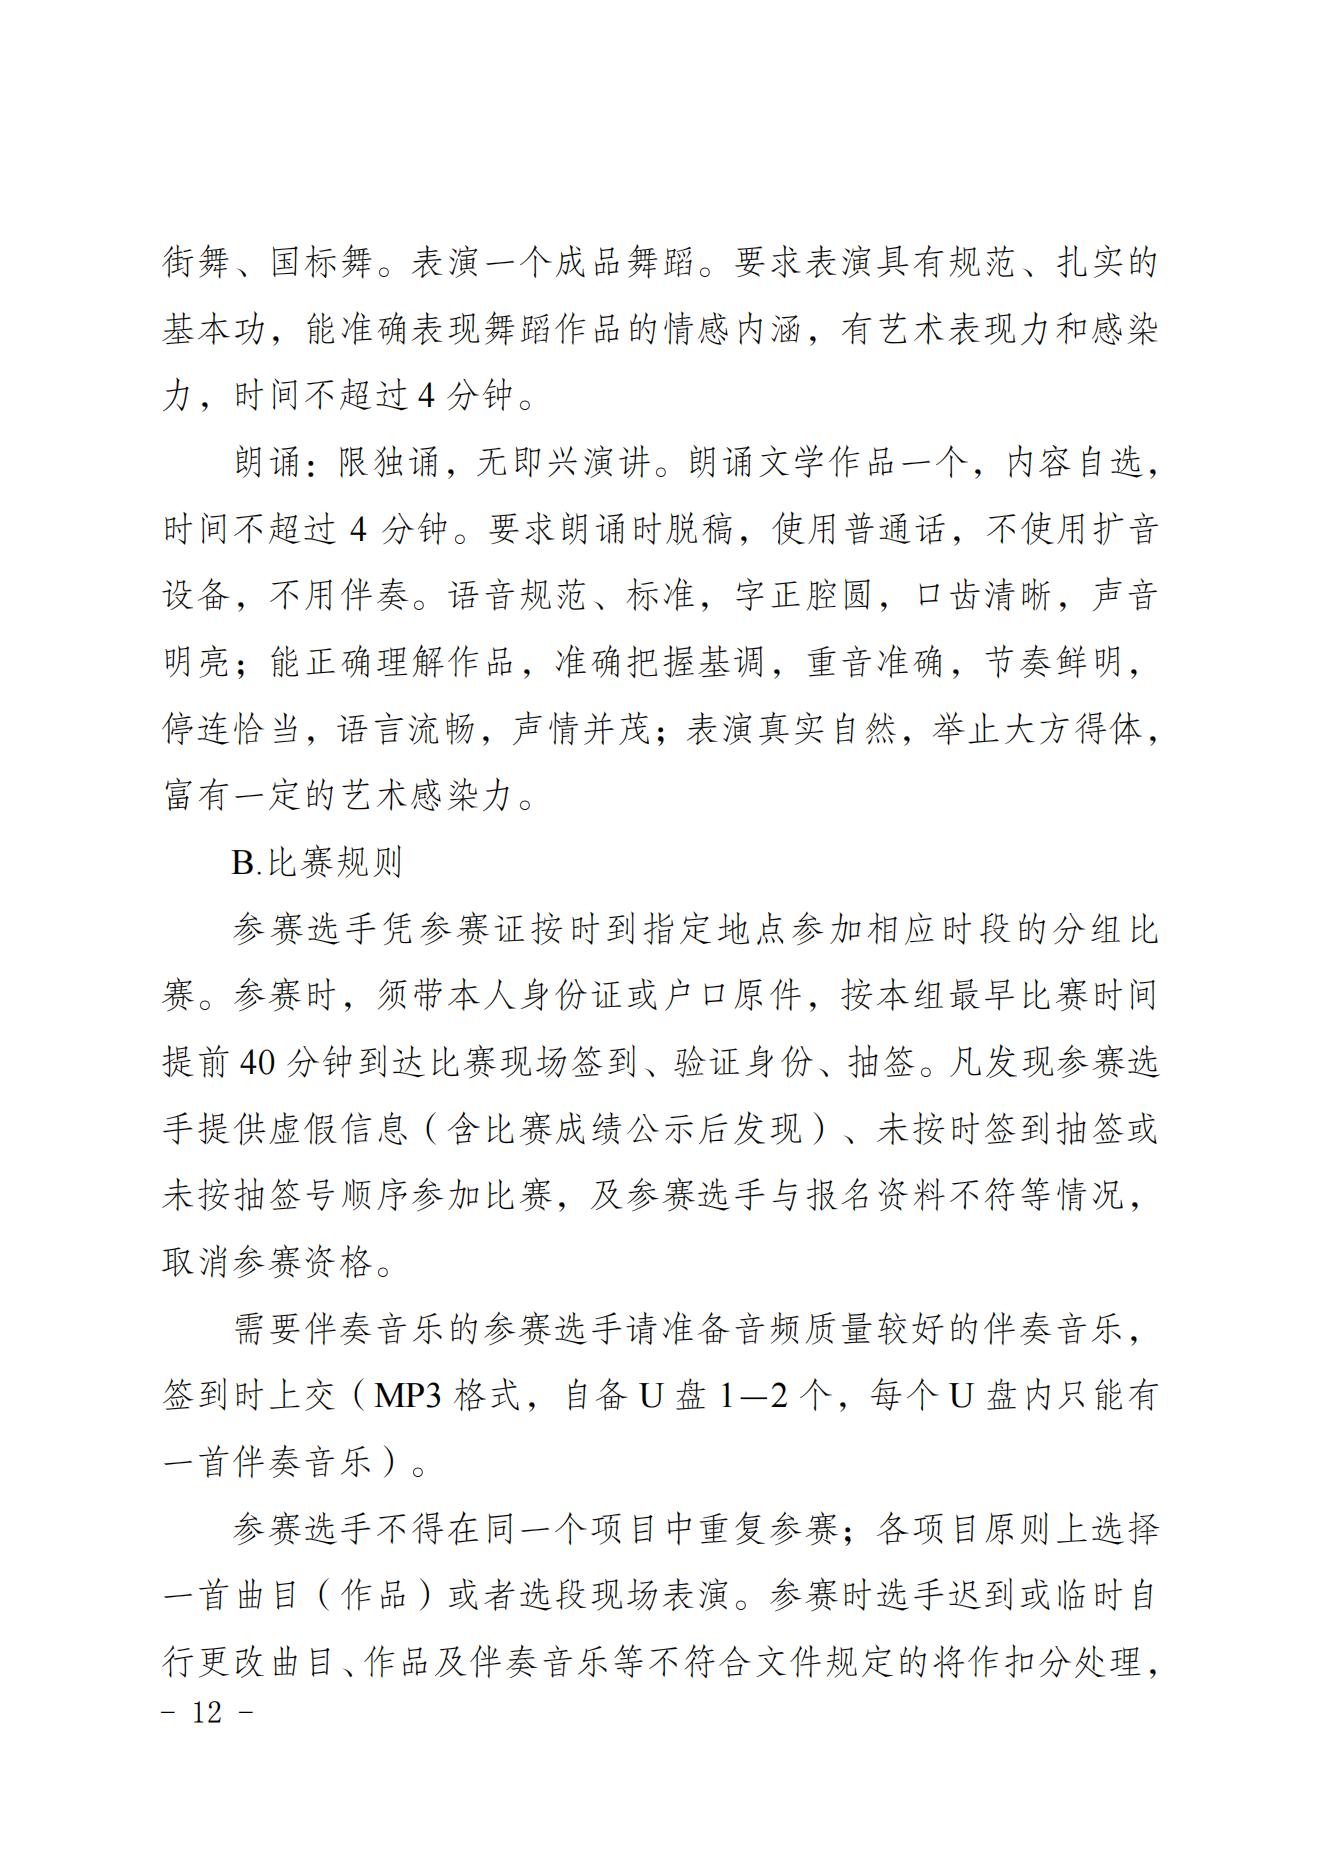 2022共青团重庆市委关于印发重庆市第十七届中小学生才艺大赛活动方案的通知 第12张